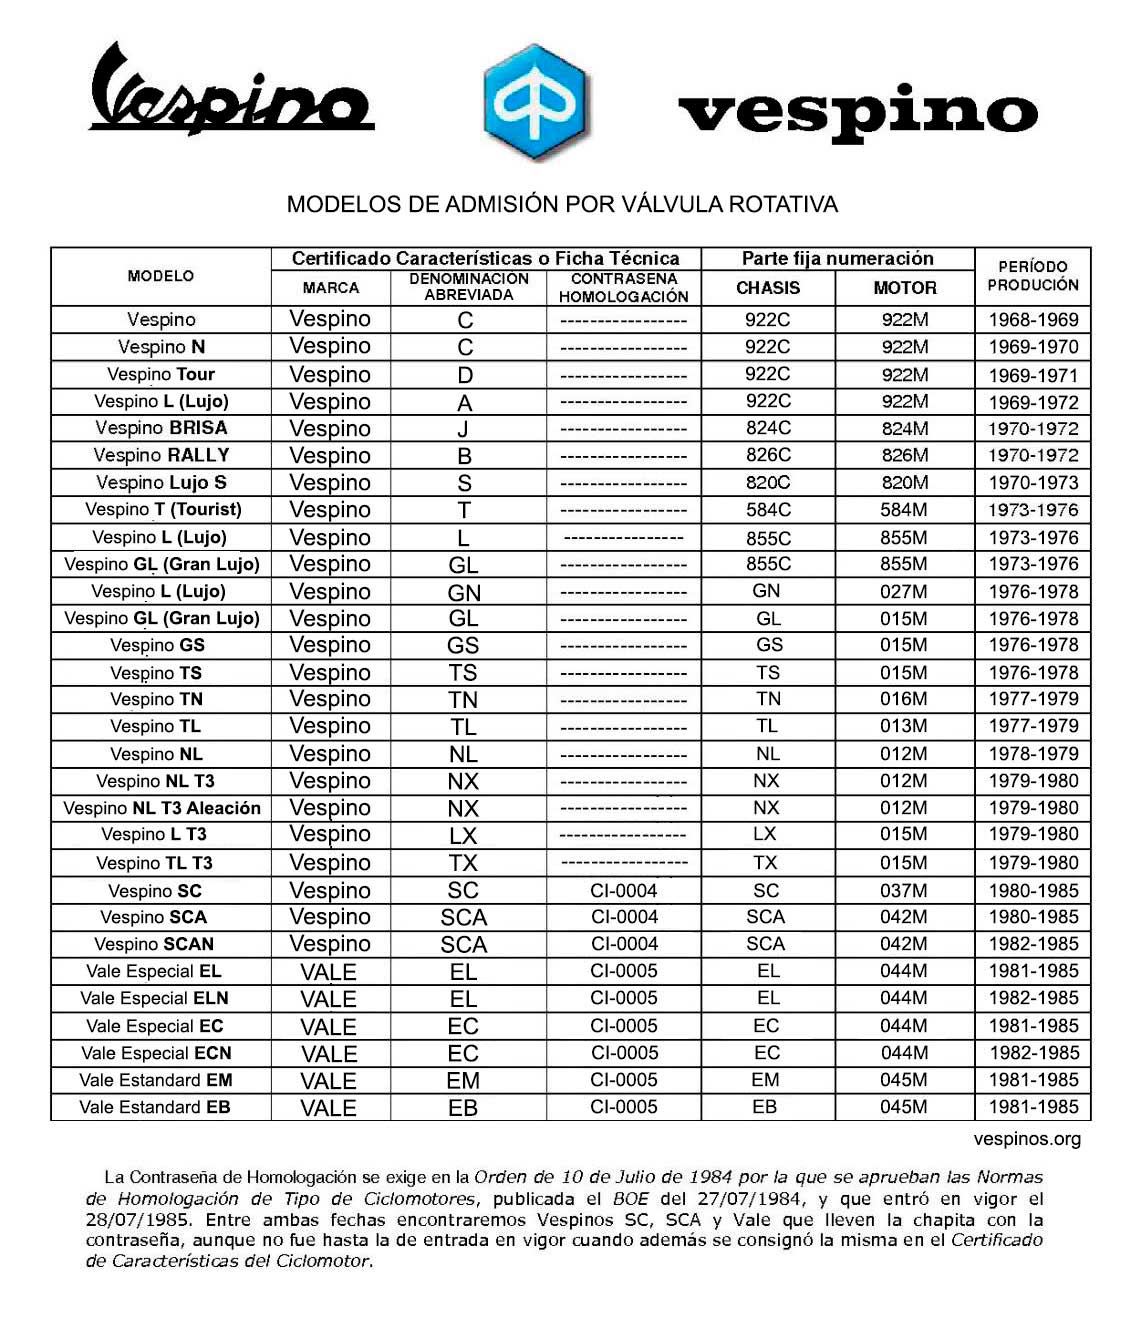 Tabla de Modelos Vespinos - Admisión Por Válvula Rotativa - Vespinos.org